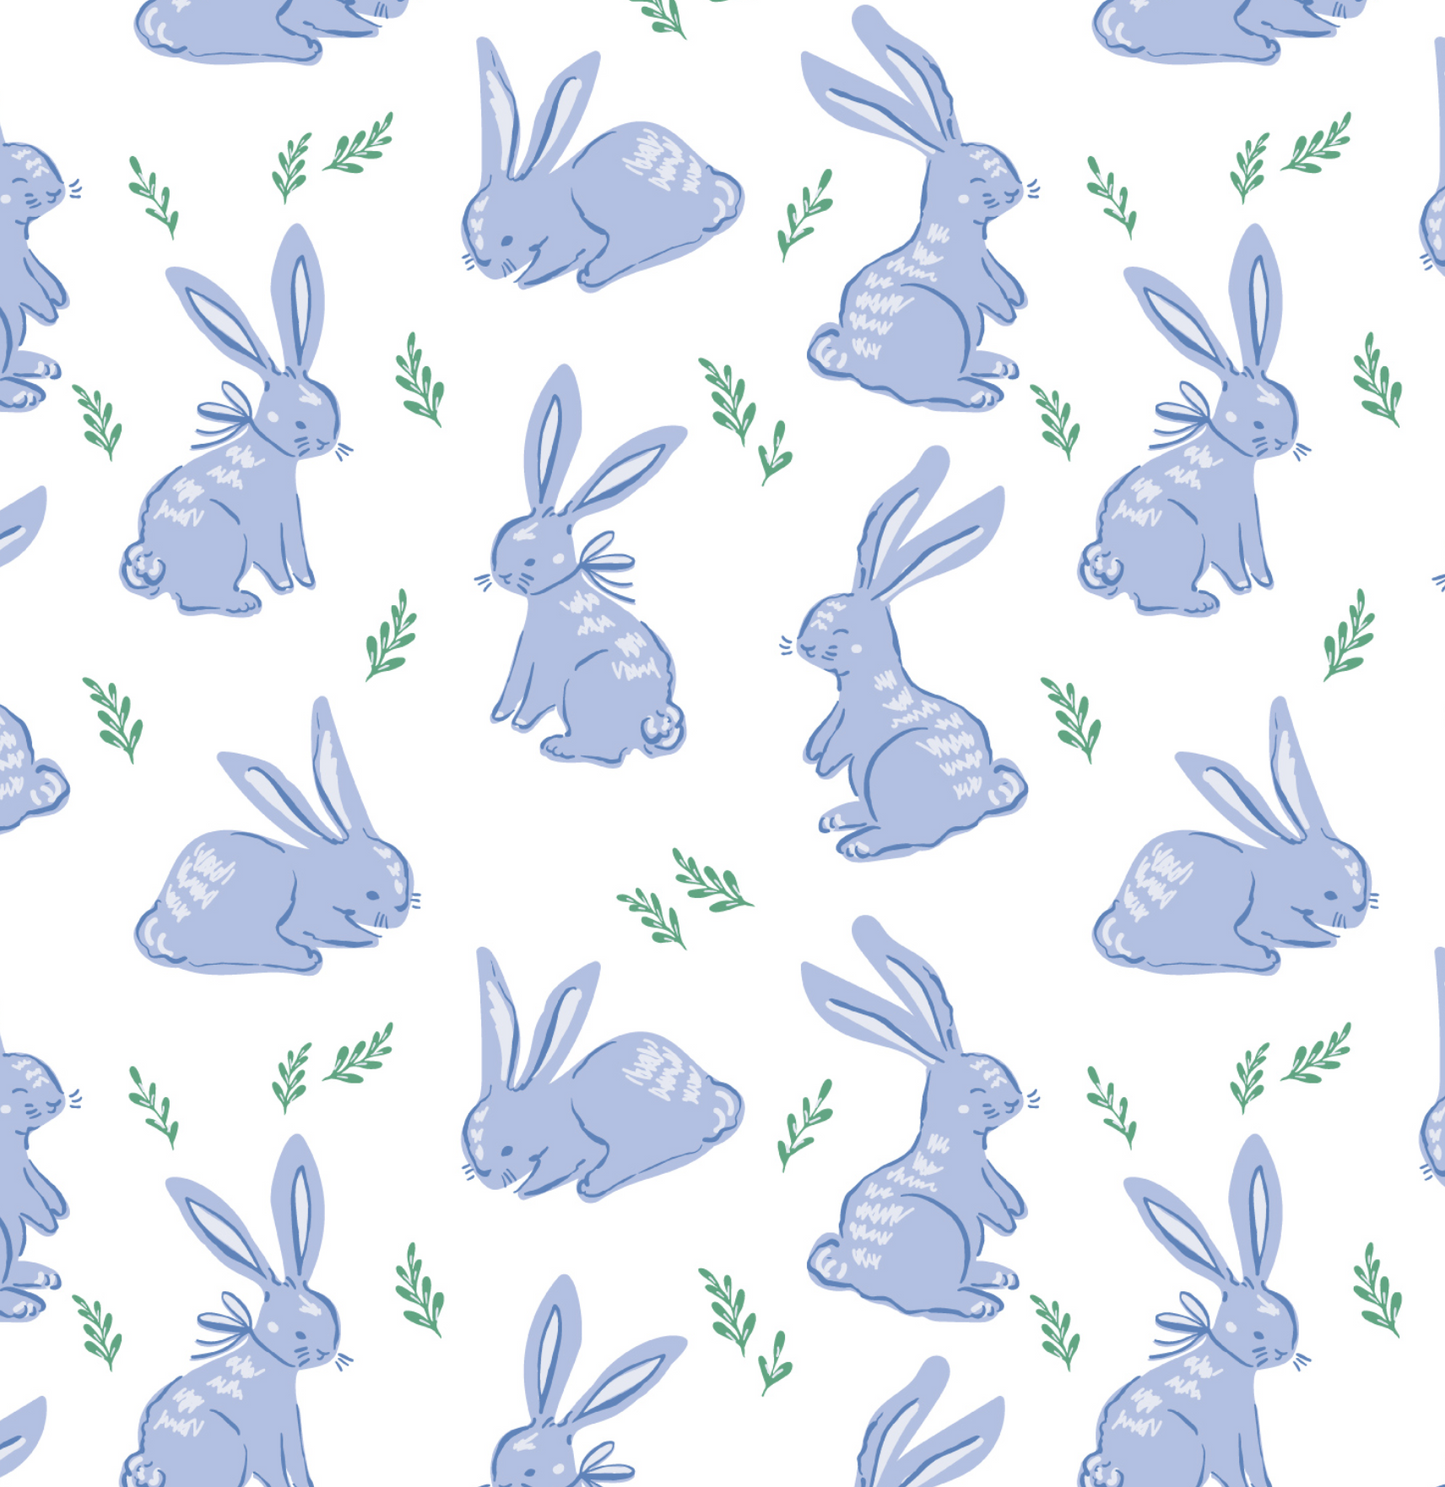 Parker Zippered Pajama- Bunny Hop Blue